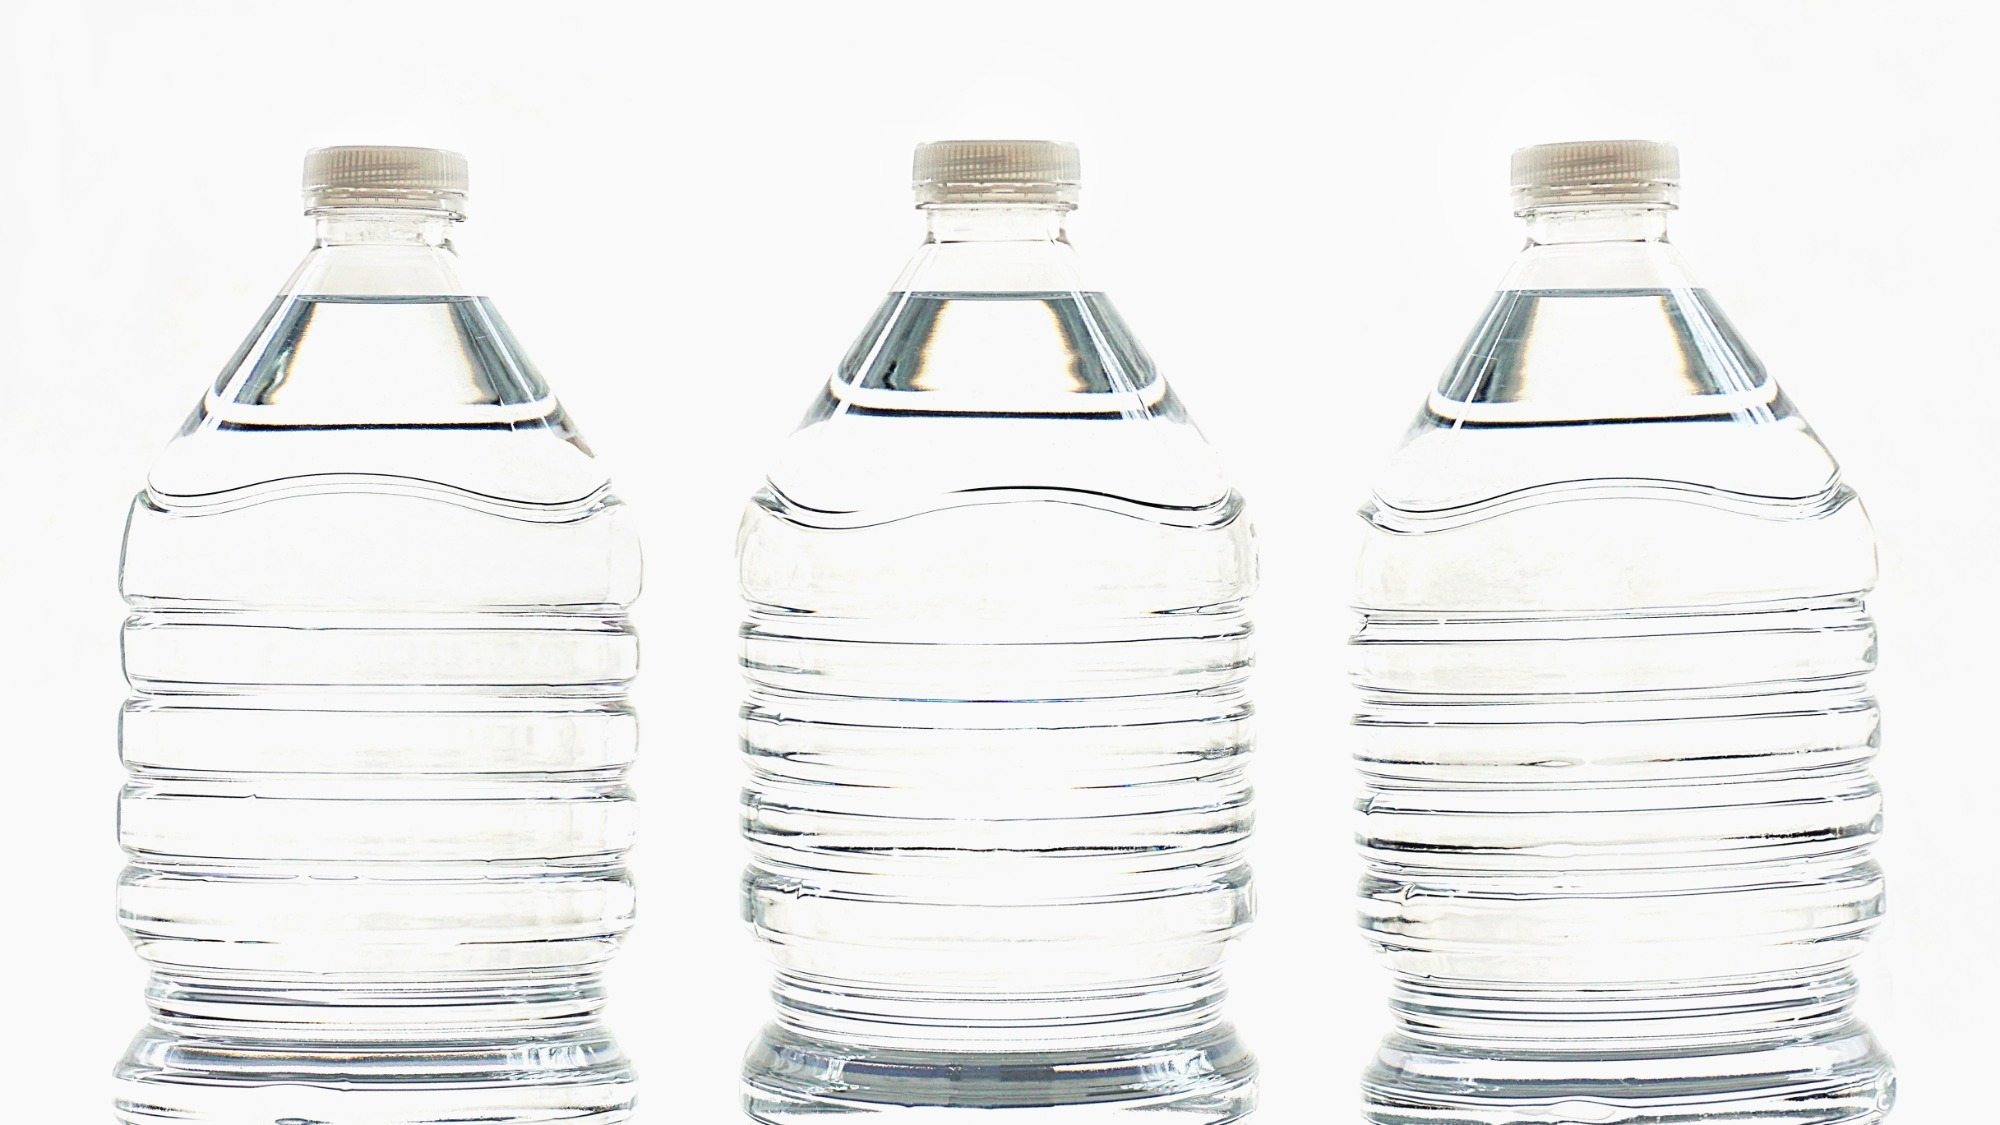 Utensils Made From Plastic Bottles - The New York Times